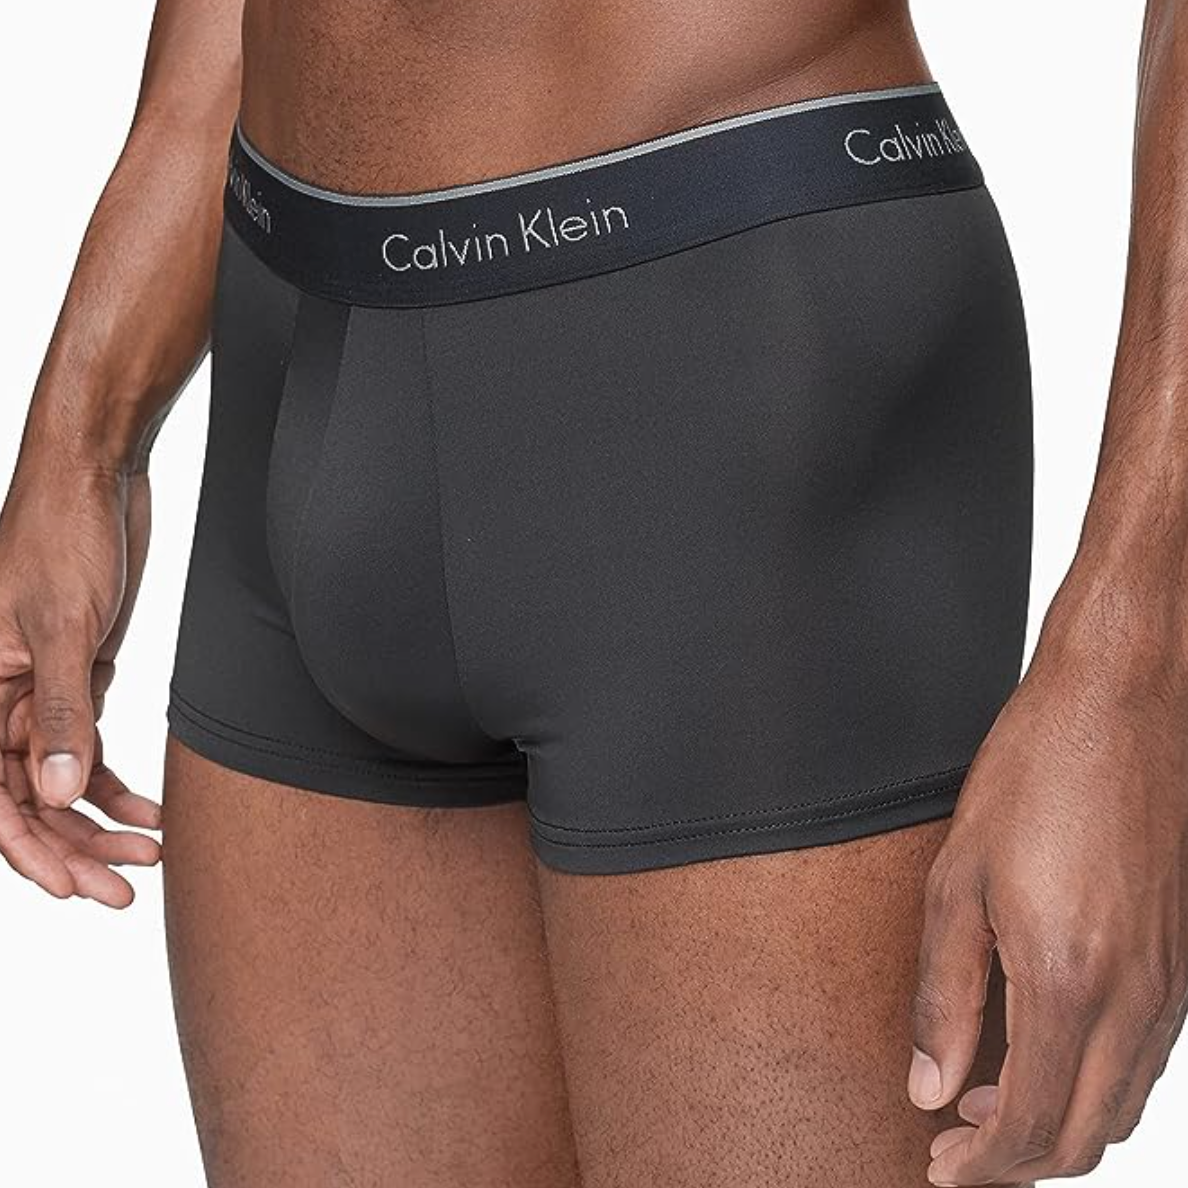 The best Prime Day 2021 Calvin Klein Underwear Deals on